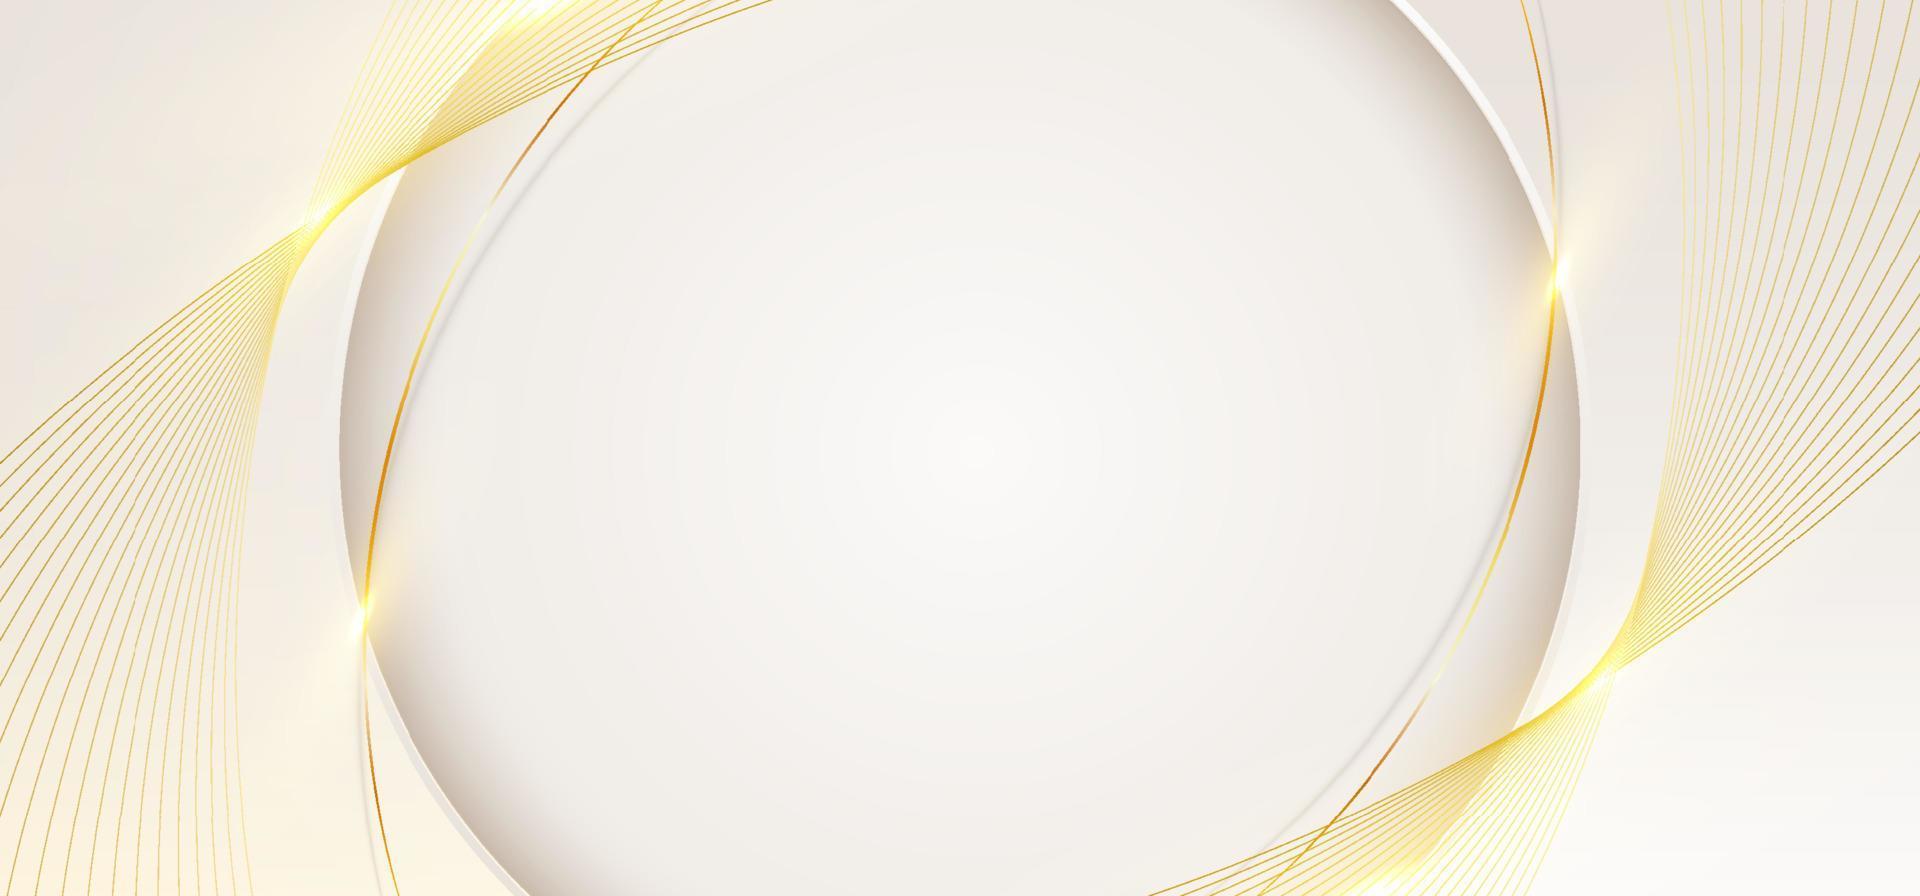 3d modelo de banner de luxo moderno design forma de círculo branco com luz de linhas curvas douradas brilhando em fundo limpo vetor